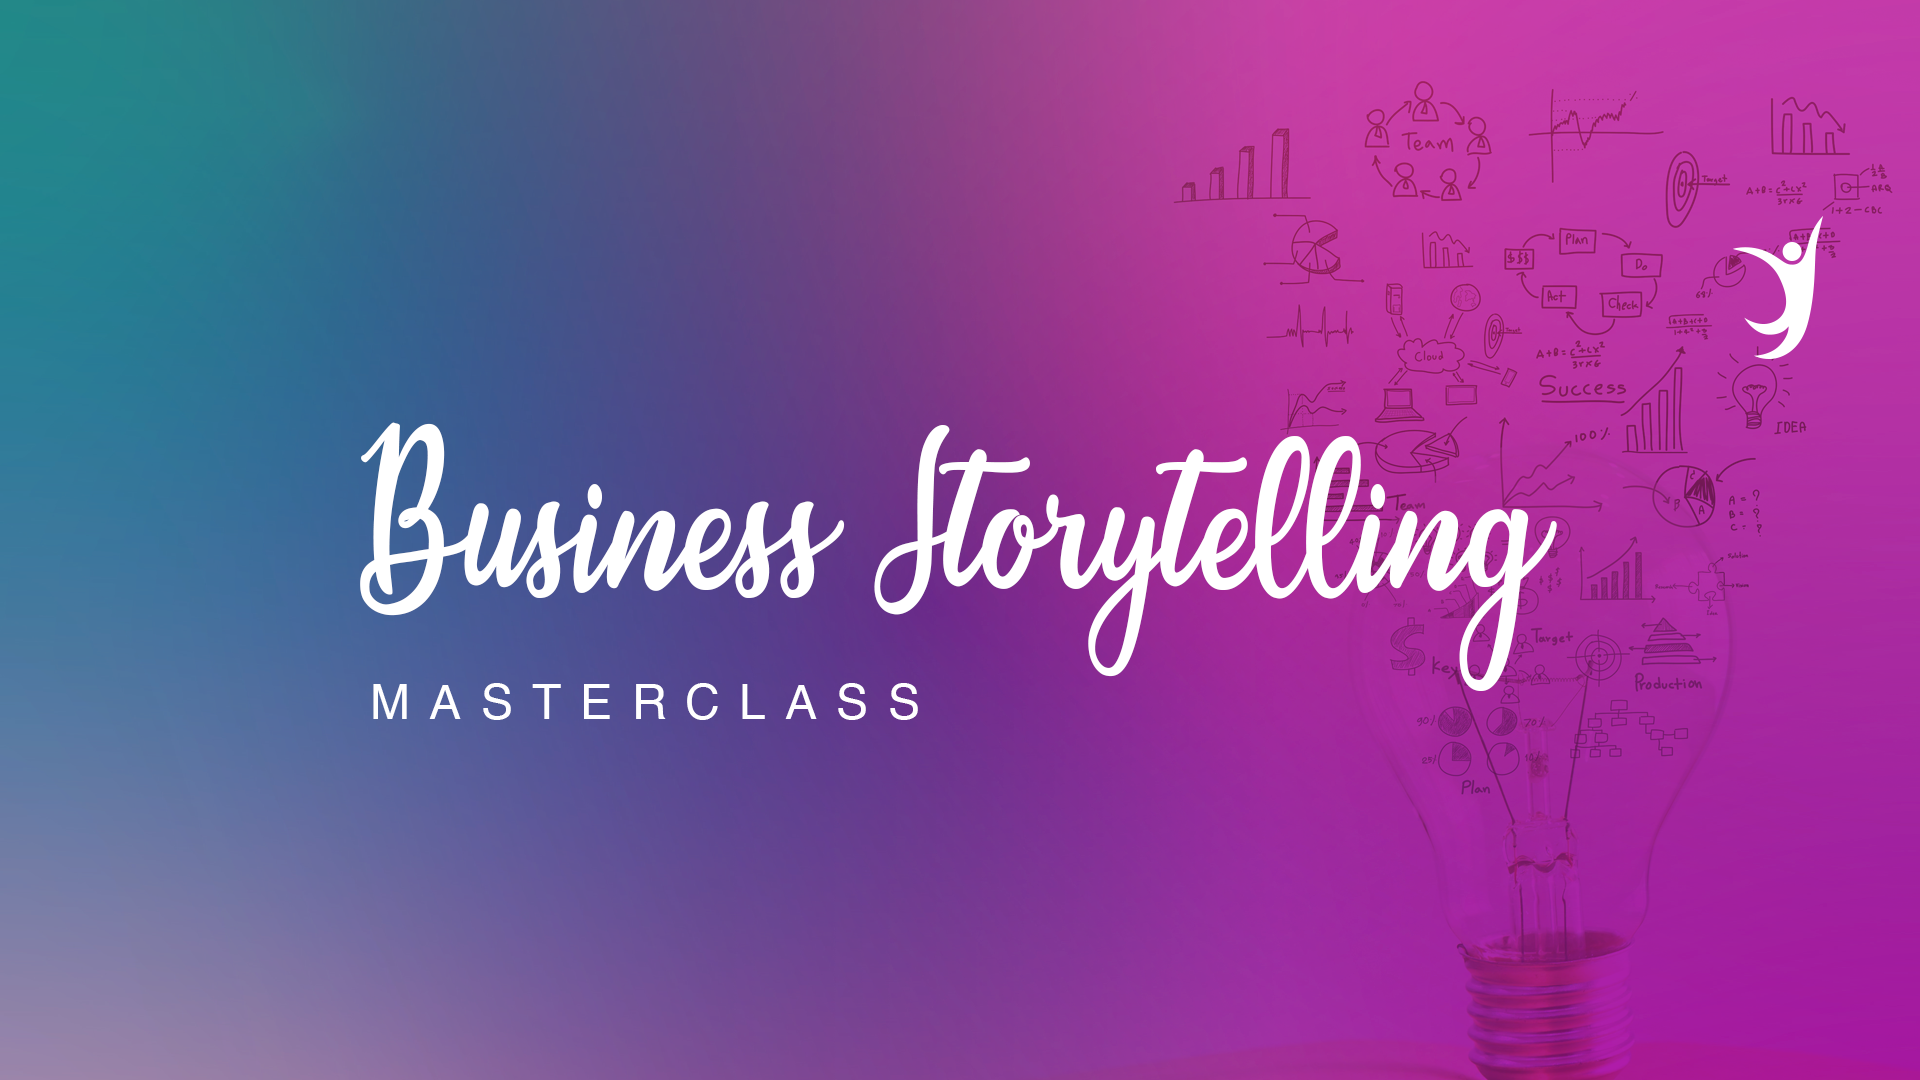 Business Storytelling Masterclass